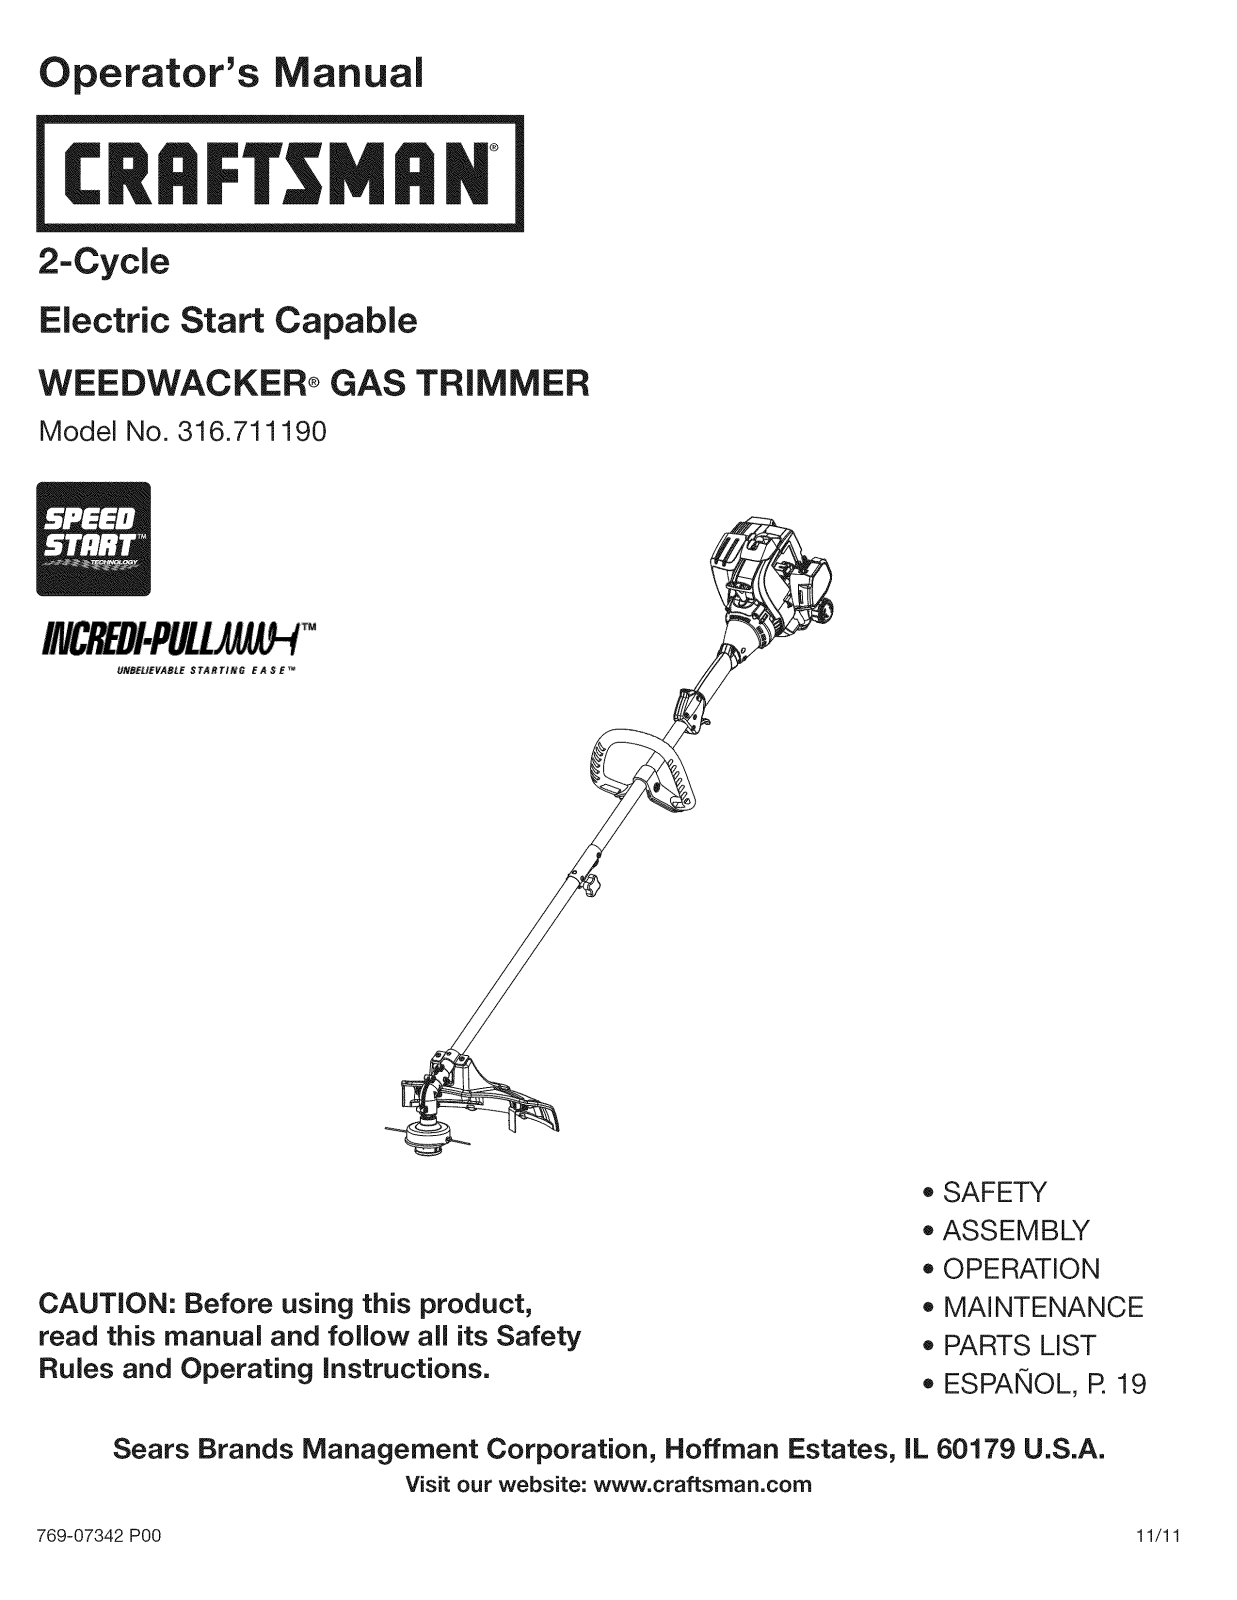 Craftsman 316.711190 User Manual